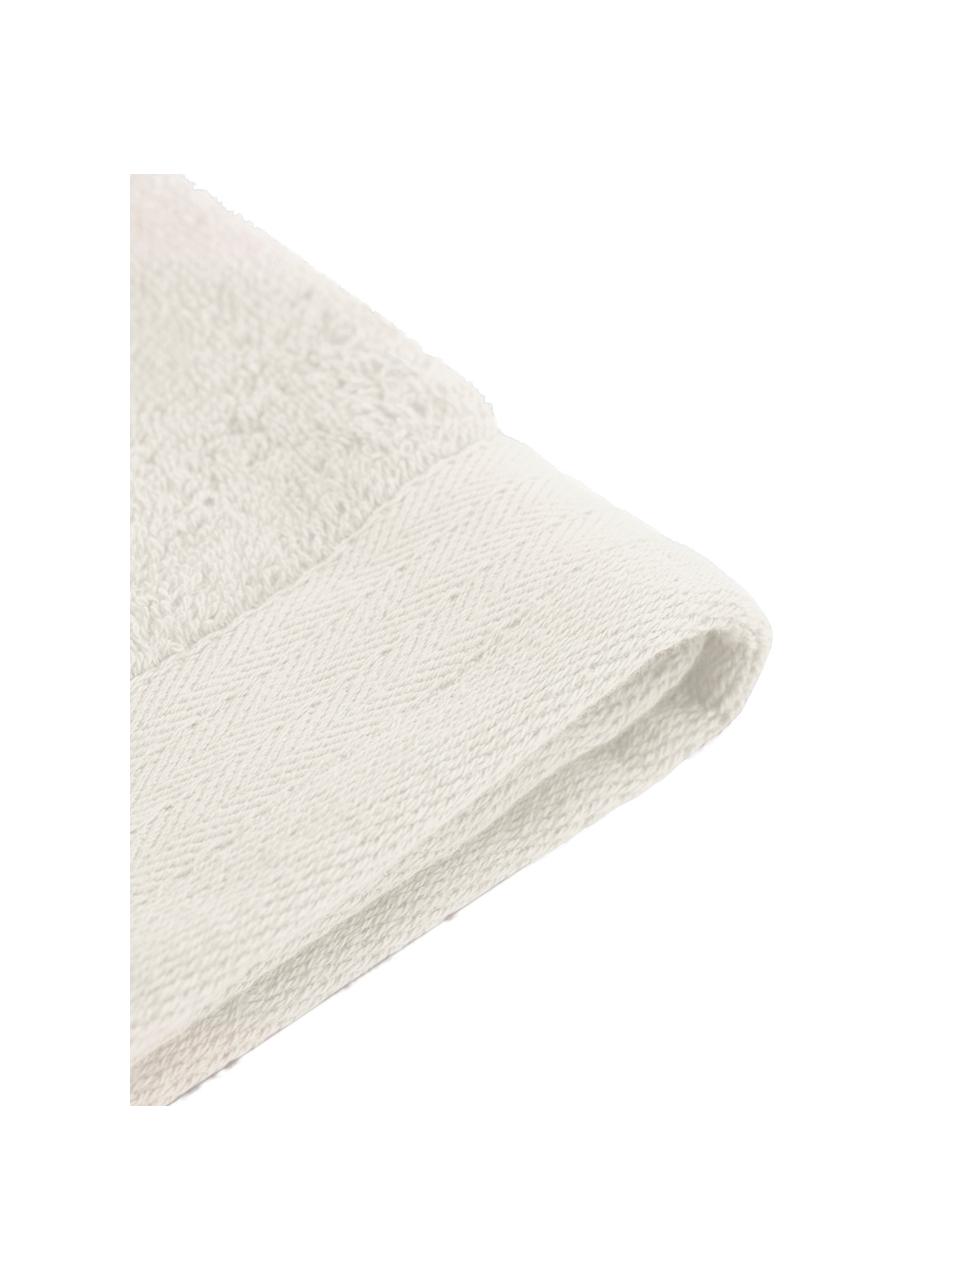 Asciugamano Soft Cotton, Beige chiaro, Asciugamano per ospiti